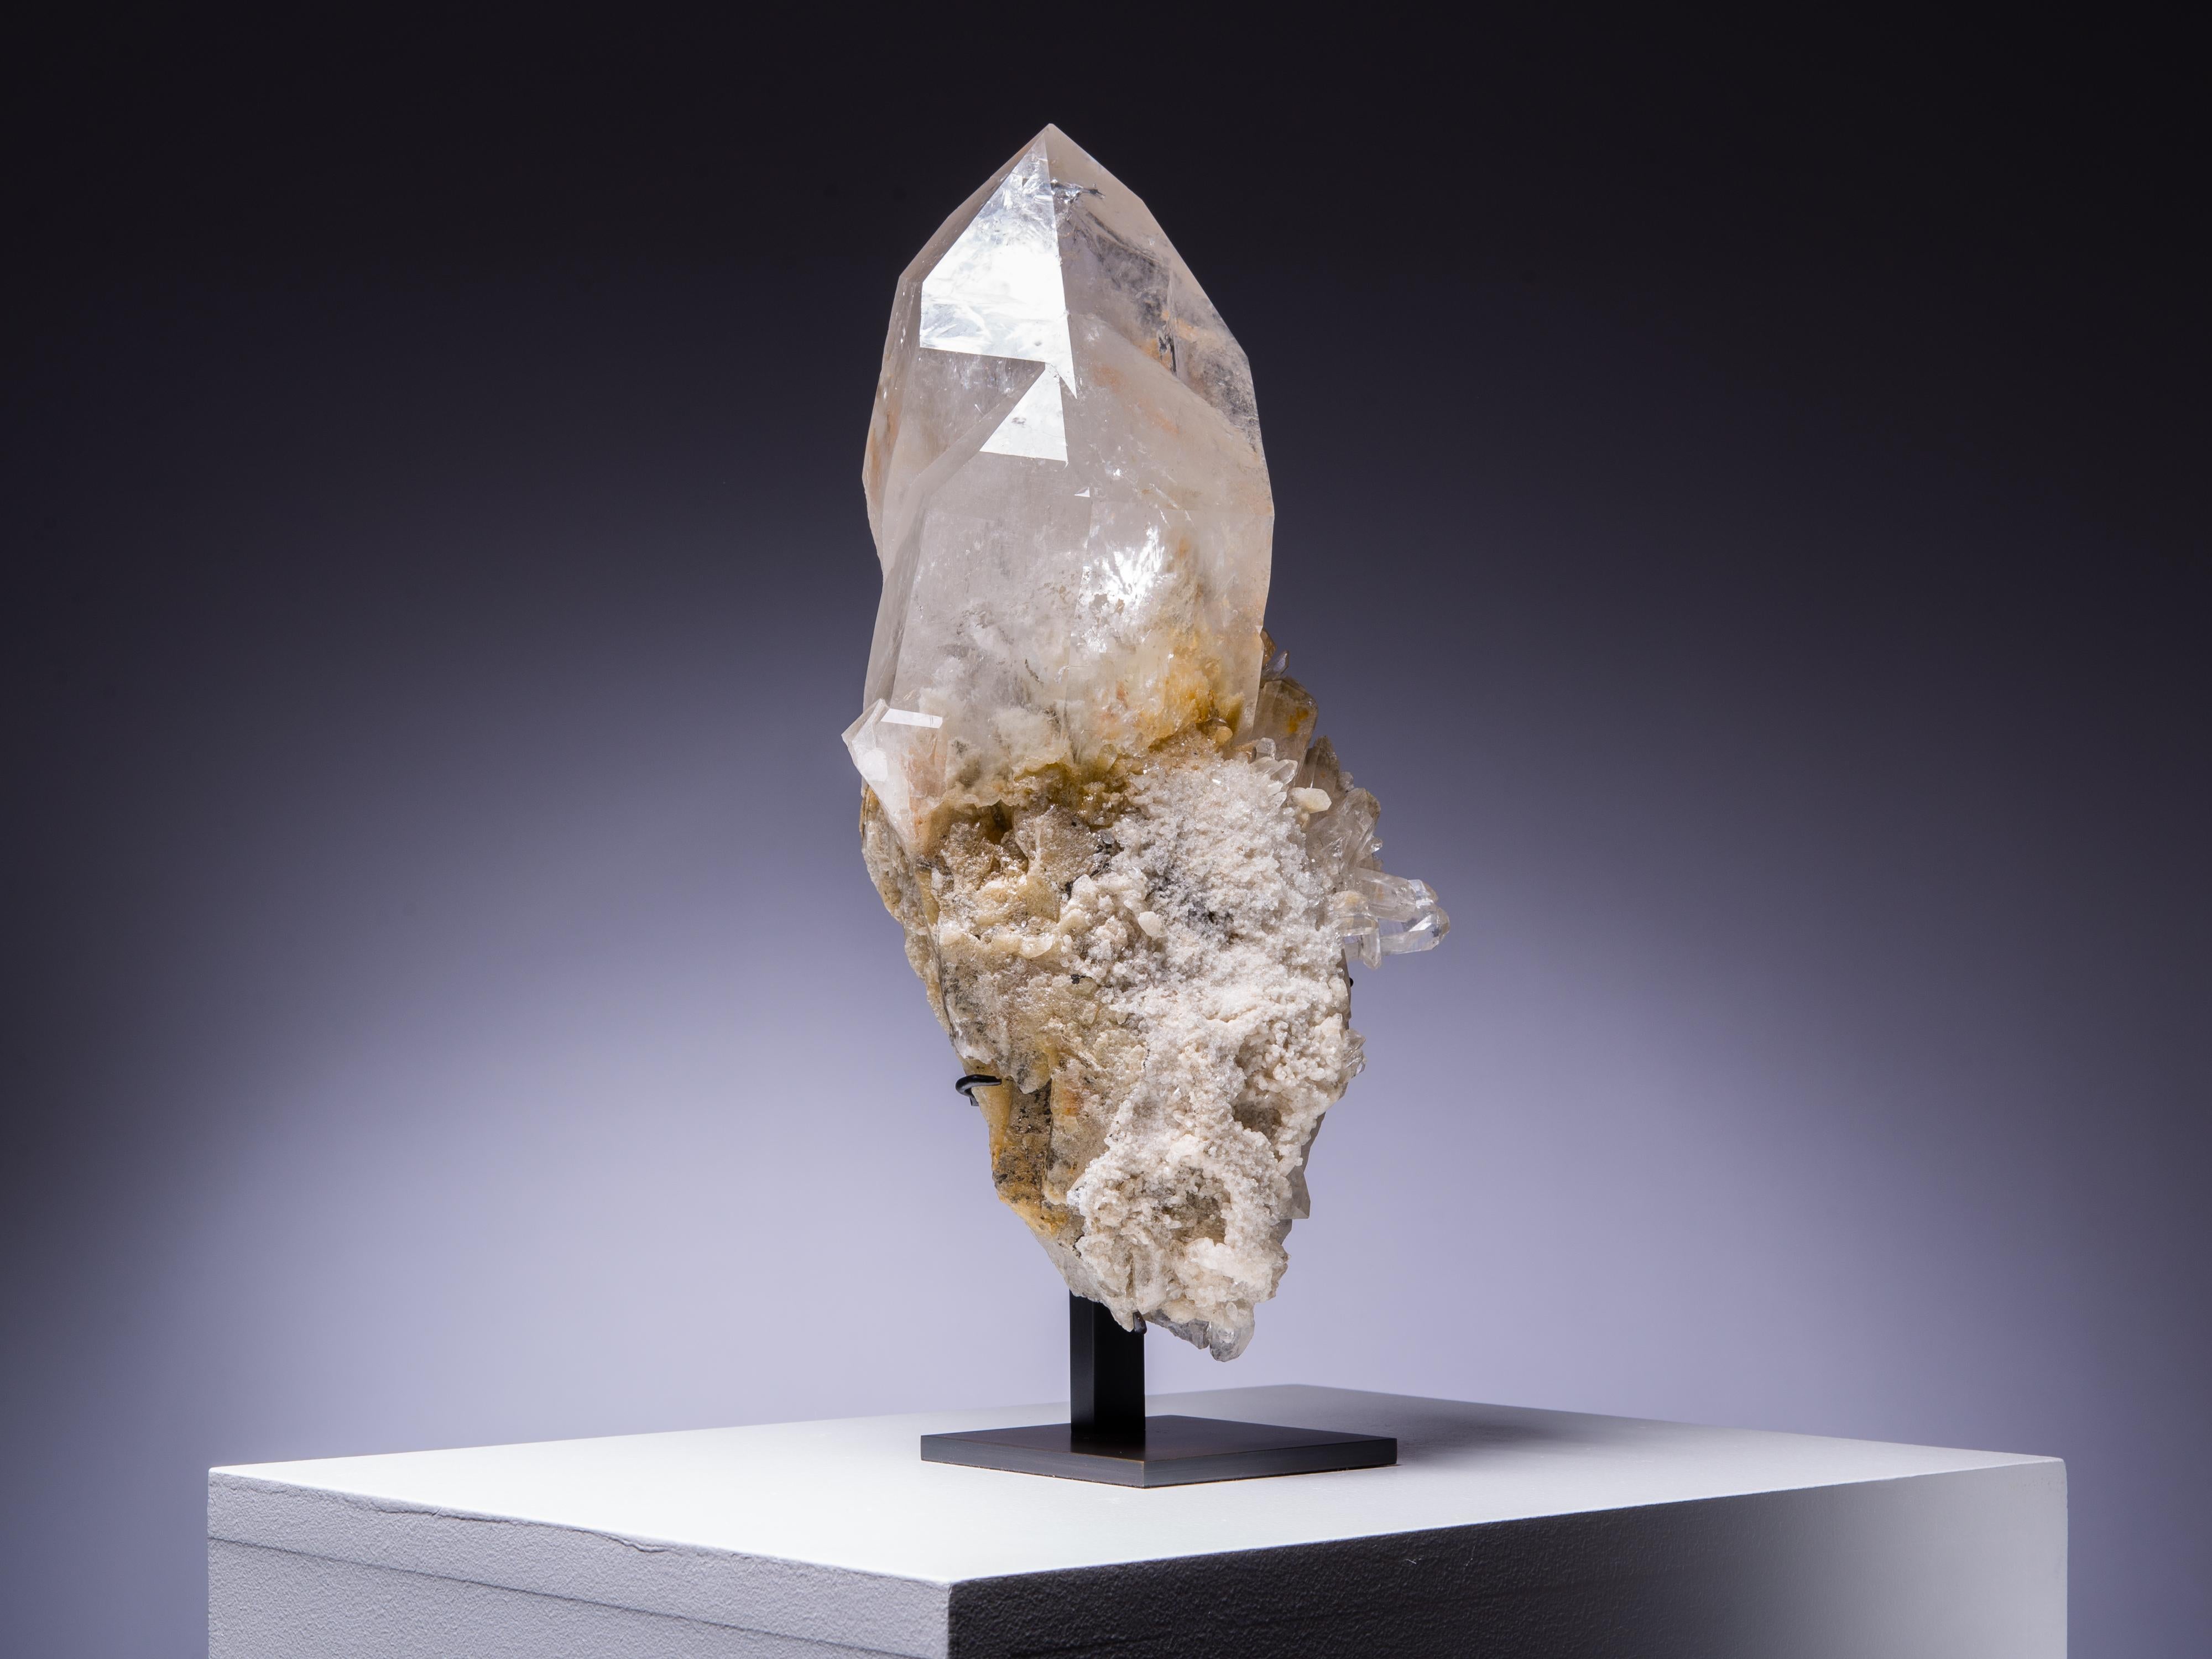 crystalline quartz